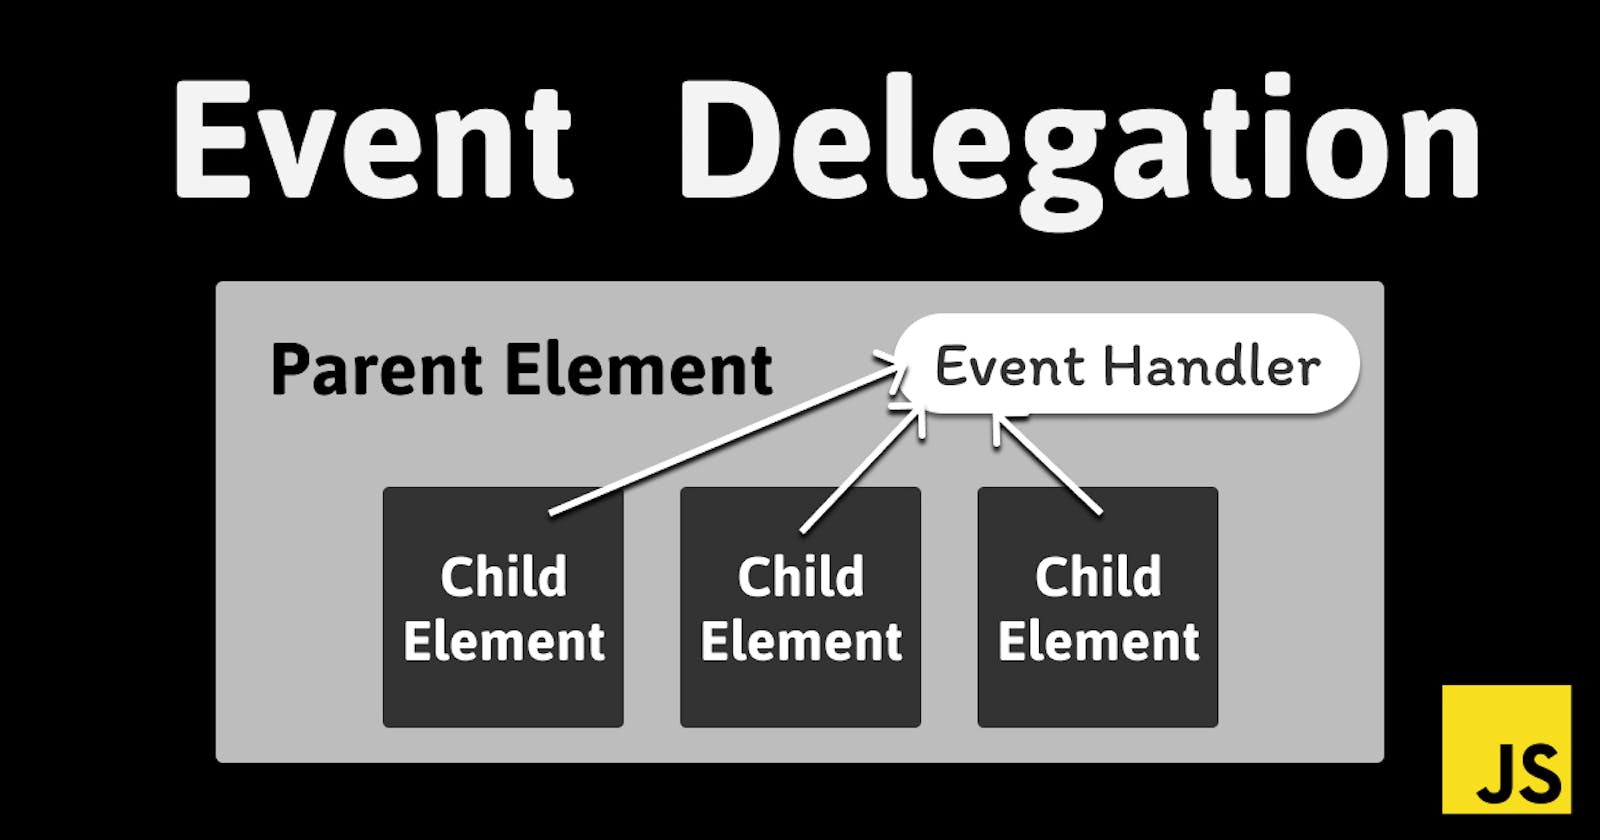 Event Delegation in JavaScript